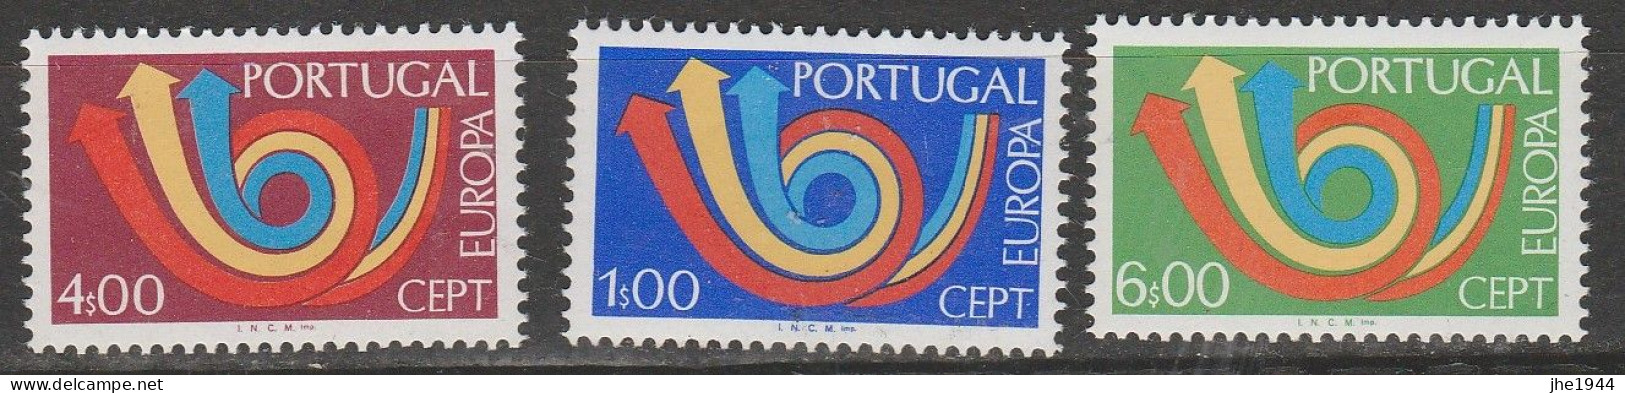 Europa 1973 Dessins communs Voir liste des timbres à vendre 15 pays **